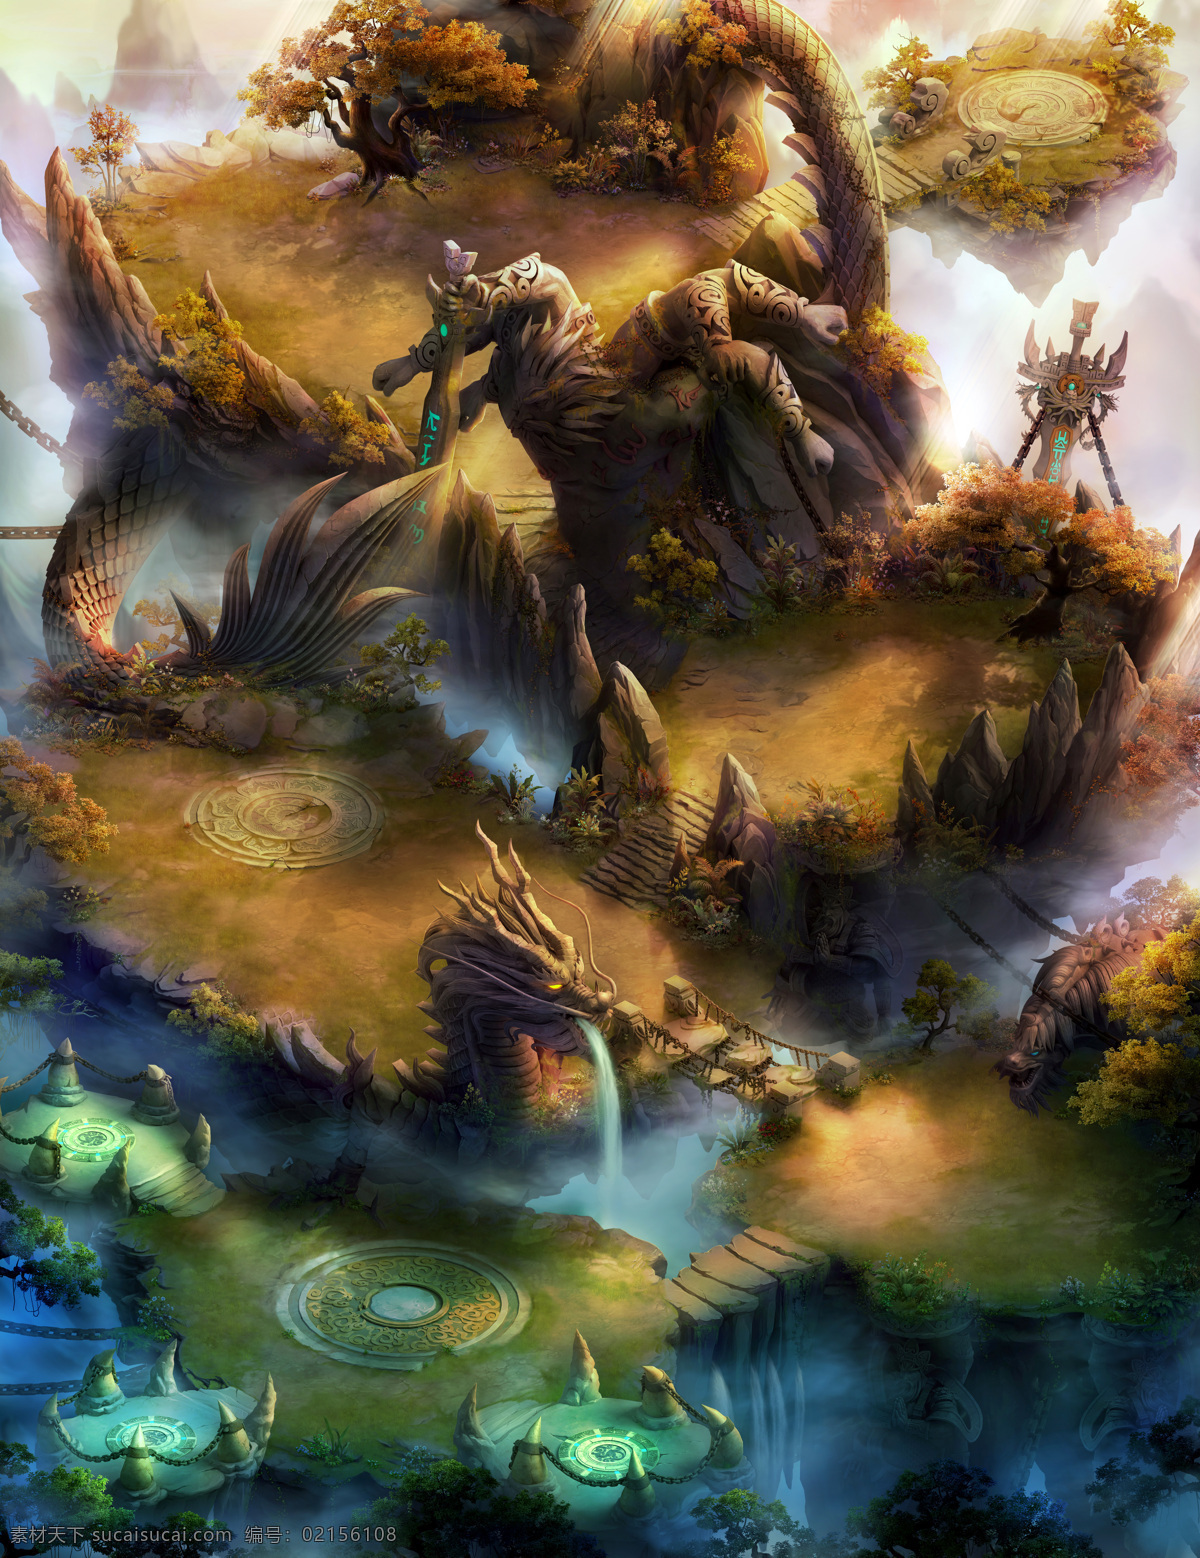 游戏场景 游戏图片 设计素材 模板下载 草地 河流 仙境 修仙 精灵 童话世界 景观 风景漫画 动漫动画 绝代双骄